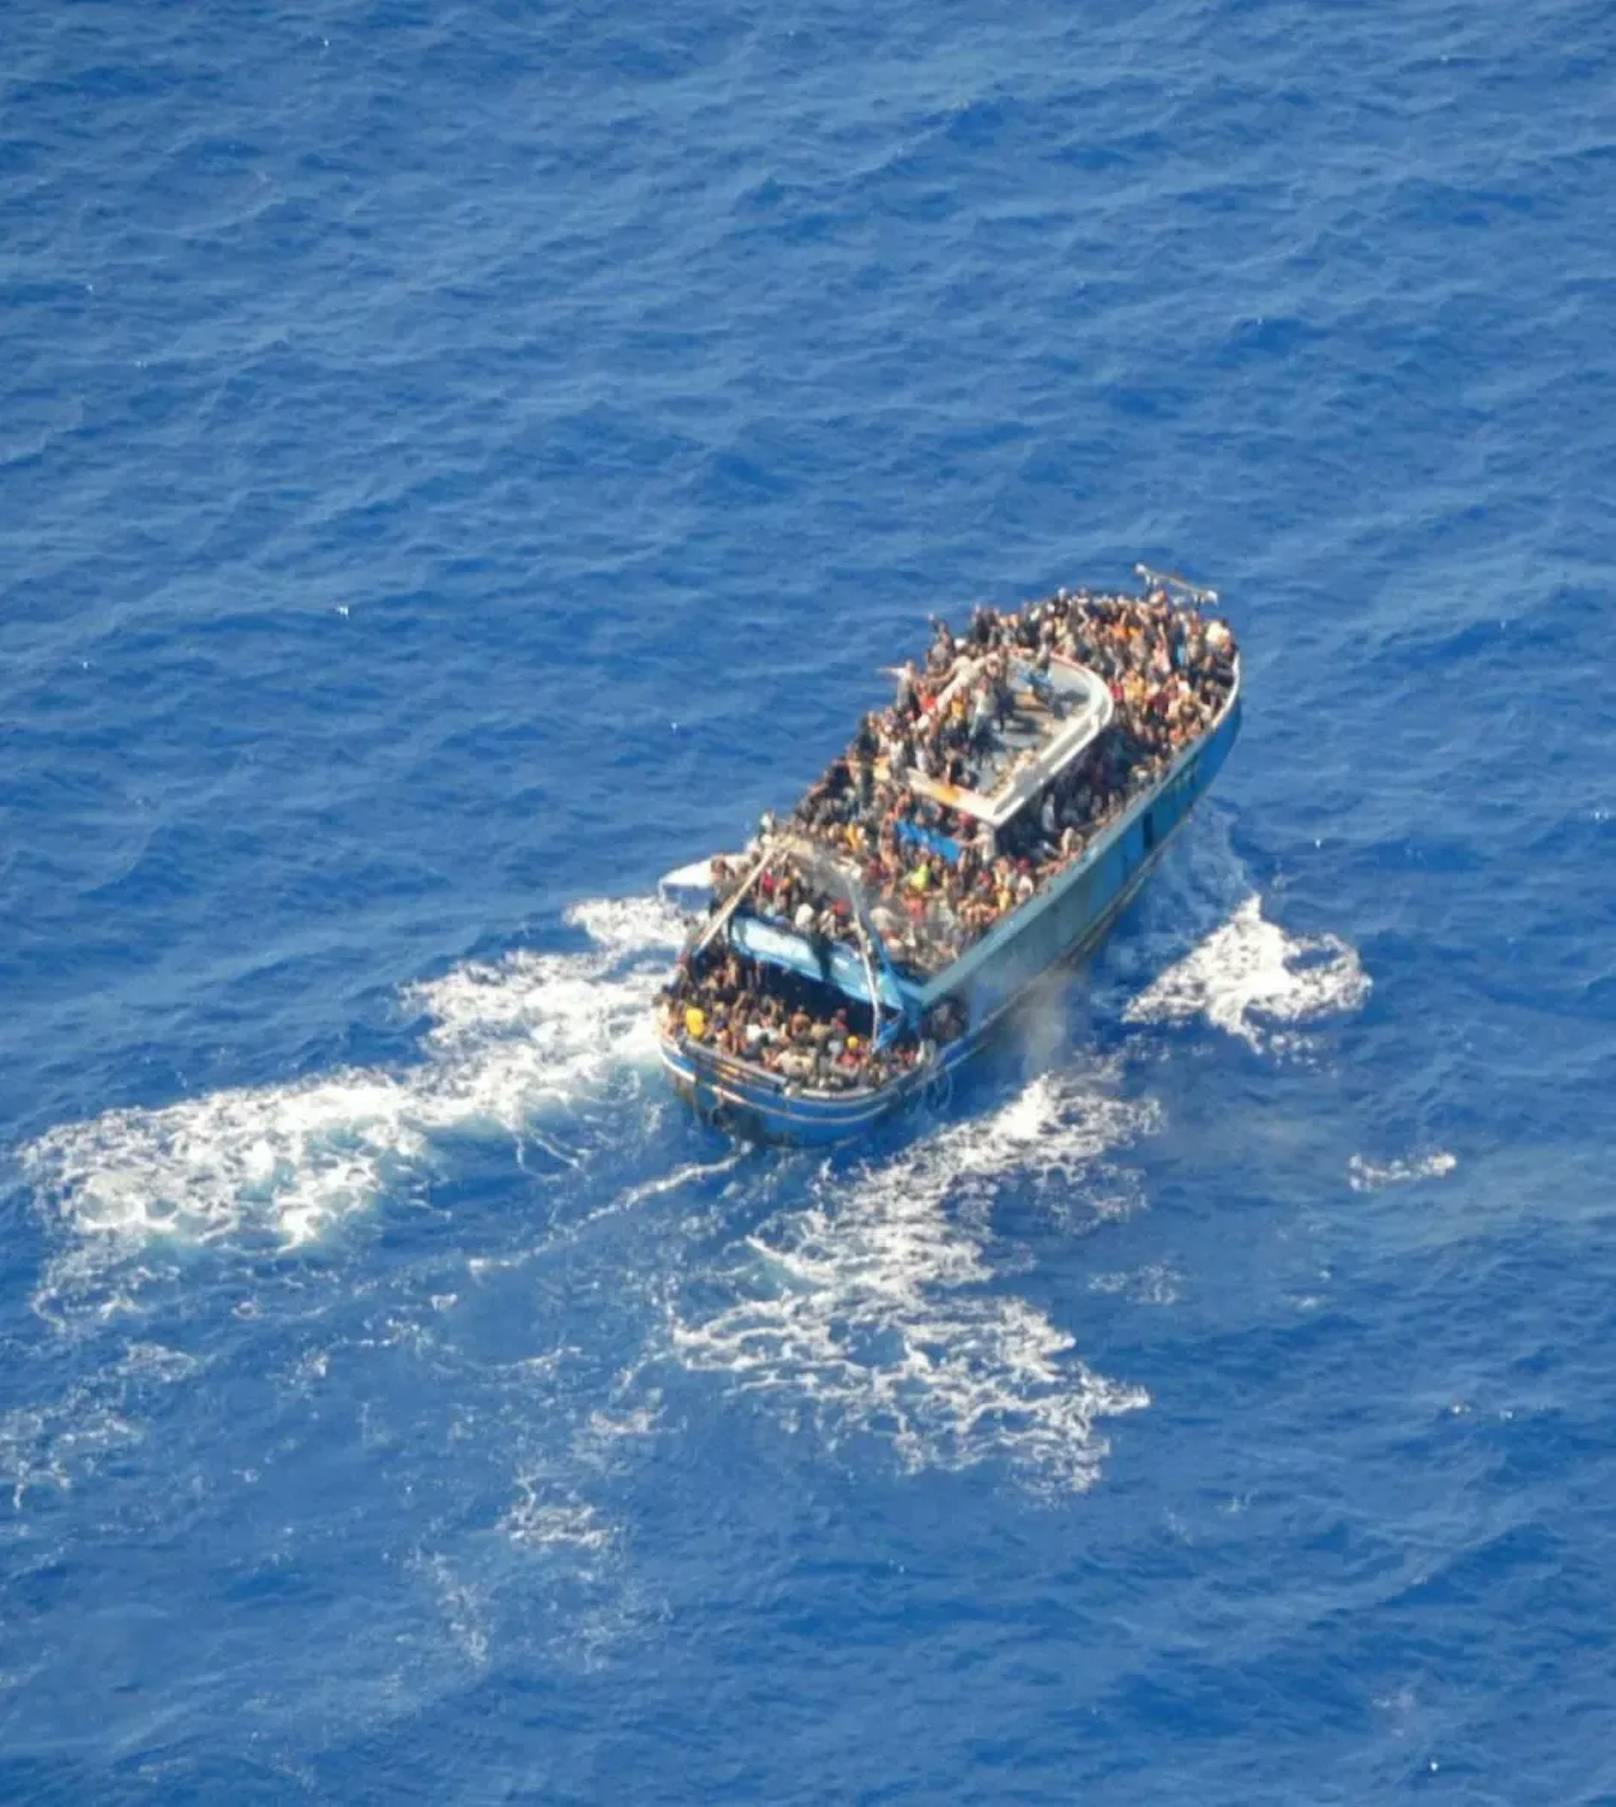 Die Aufnahmen legen nahe, dass mehr als 500 Menschen an Bord gewesen sein könnten.